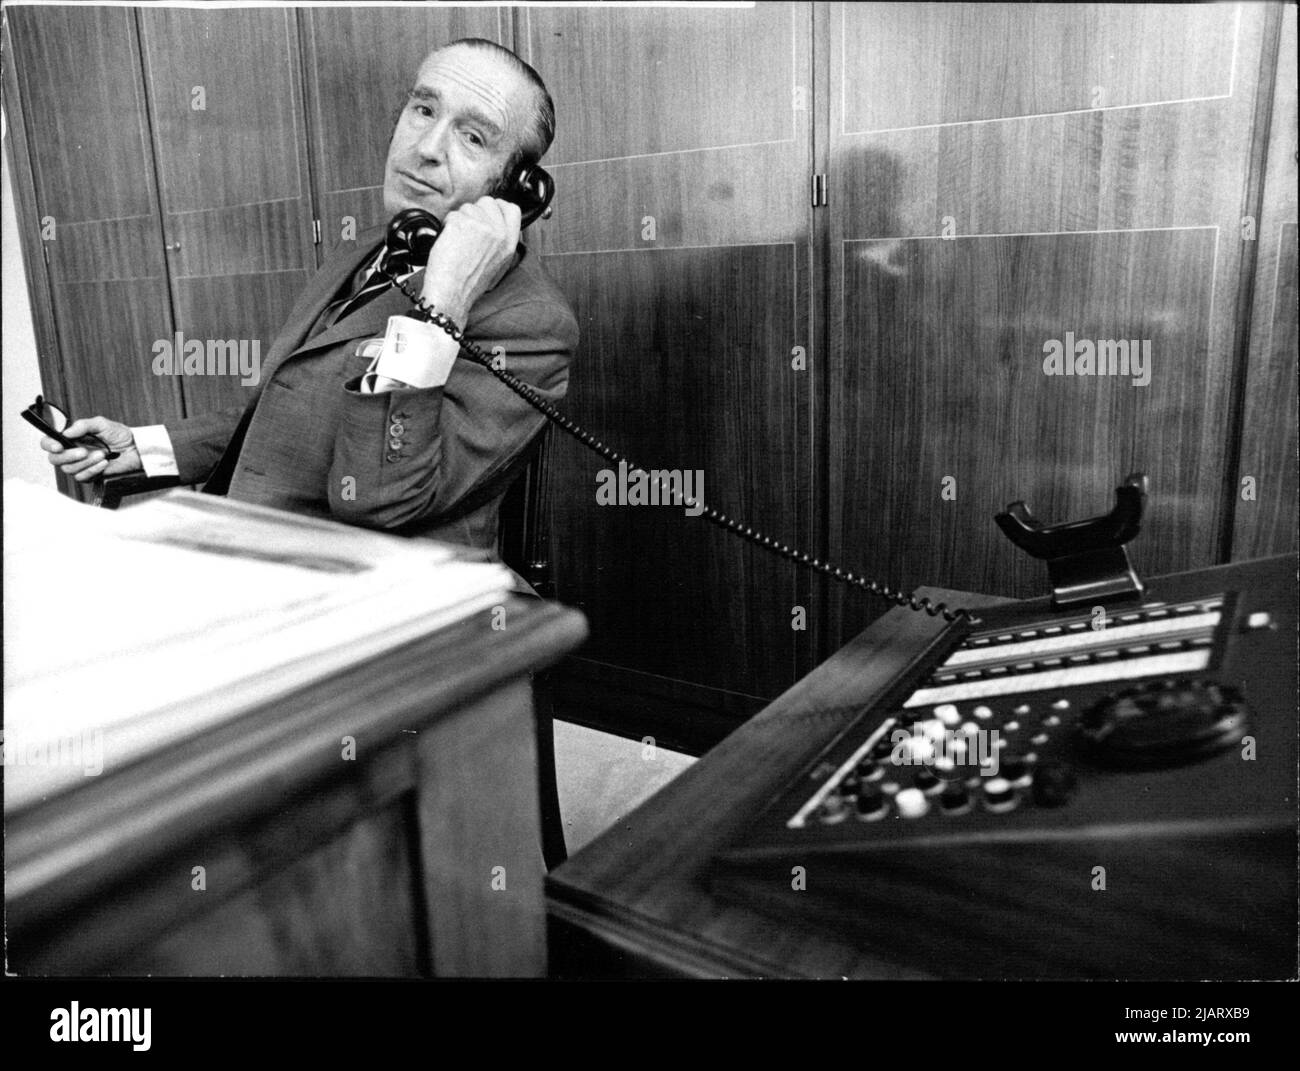 Franz Heinrich Ulrich als Vorstand der Deutschen Bank AG. Franz Heinrich Ulrich war ein deutscher Bankmanager. Von 1960 bis 1974 war Ulrich auch Vorstandsmitglied im Bundesverband deutscher Banken. Stock Photo